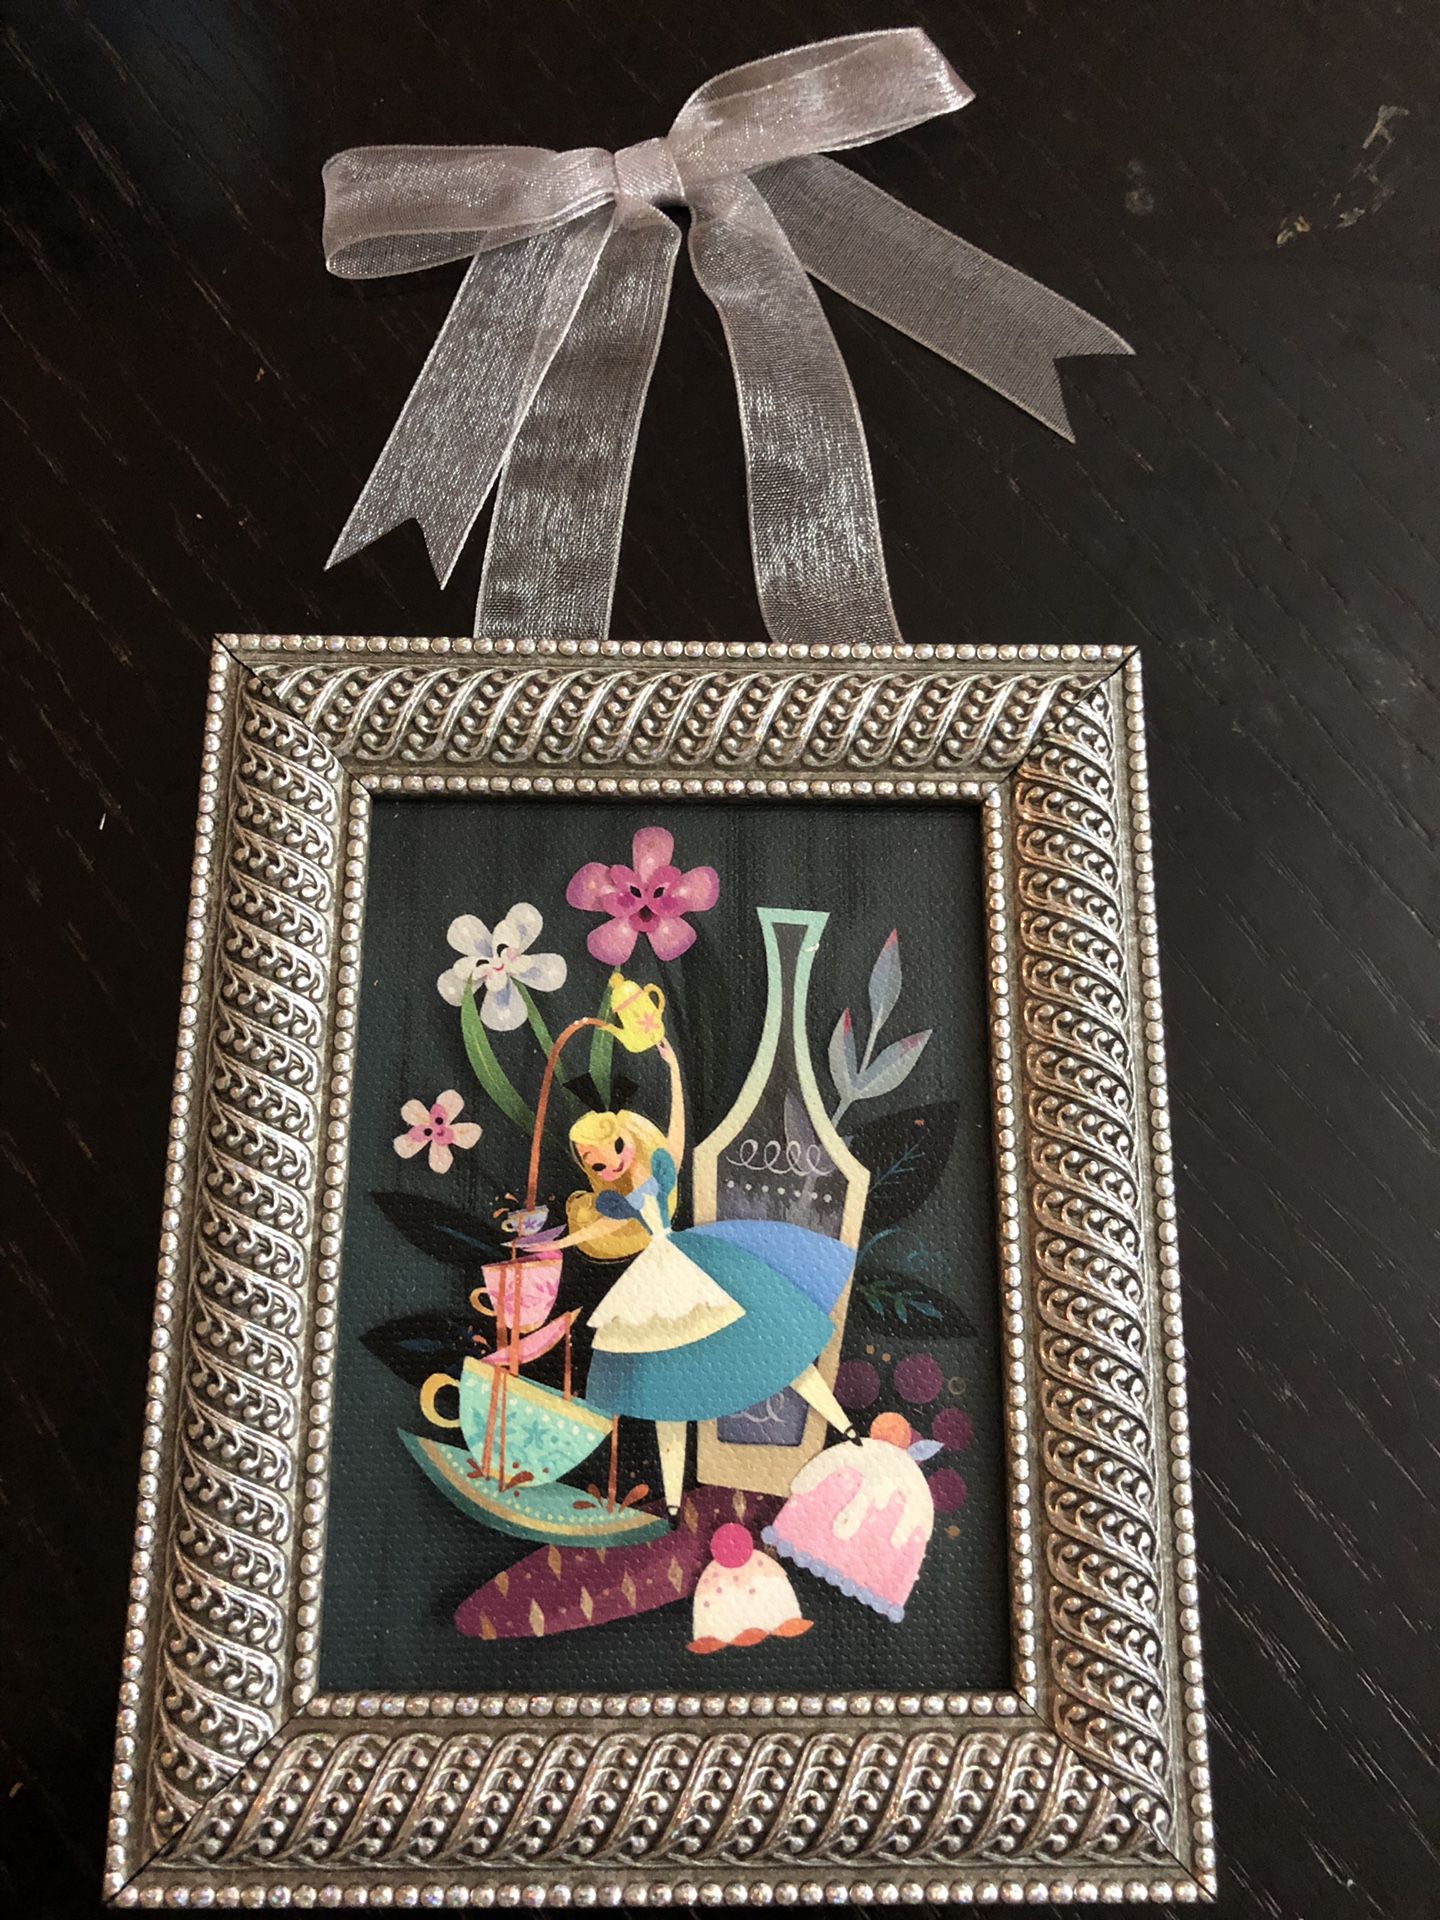 NWT Disney Parks Flower and Garden Festival Alice in Wonderland Mini Frame